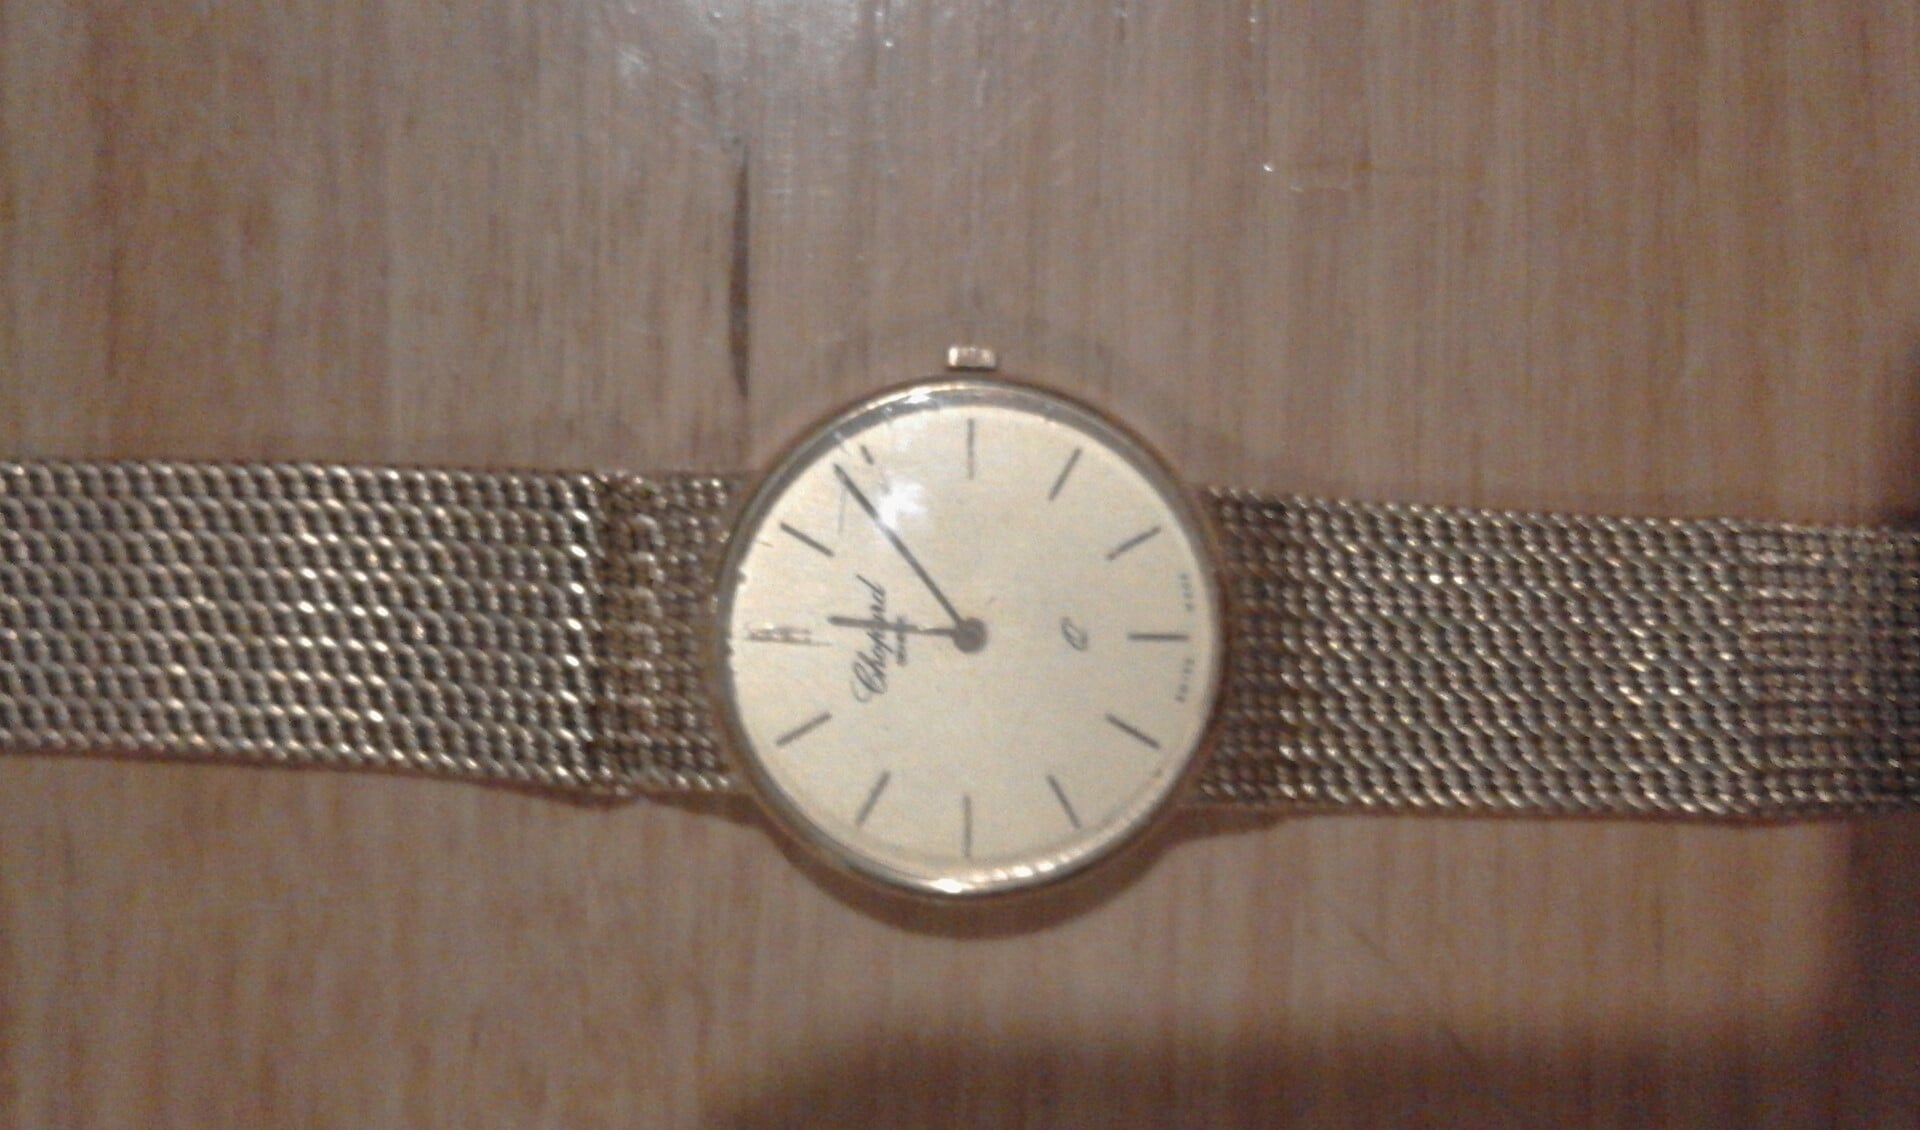 Een voorbeeld van een soortgelijk Chopard-horloge dat is gestolen. (foto: politie.nl)